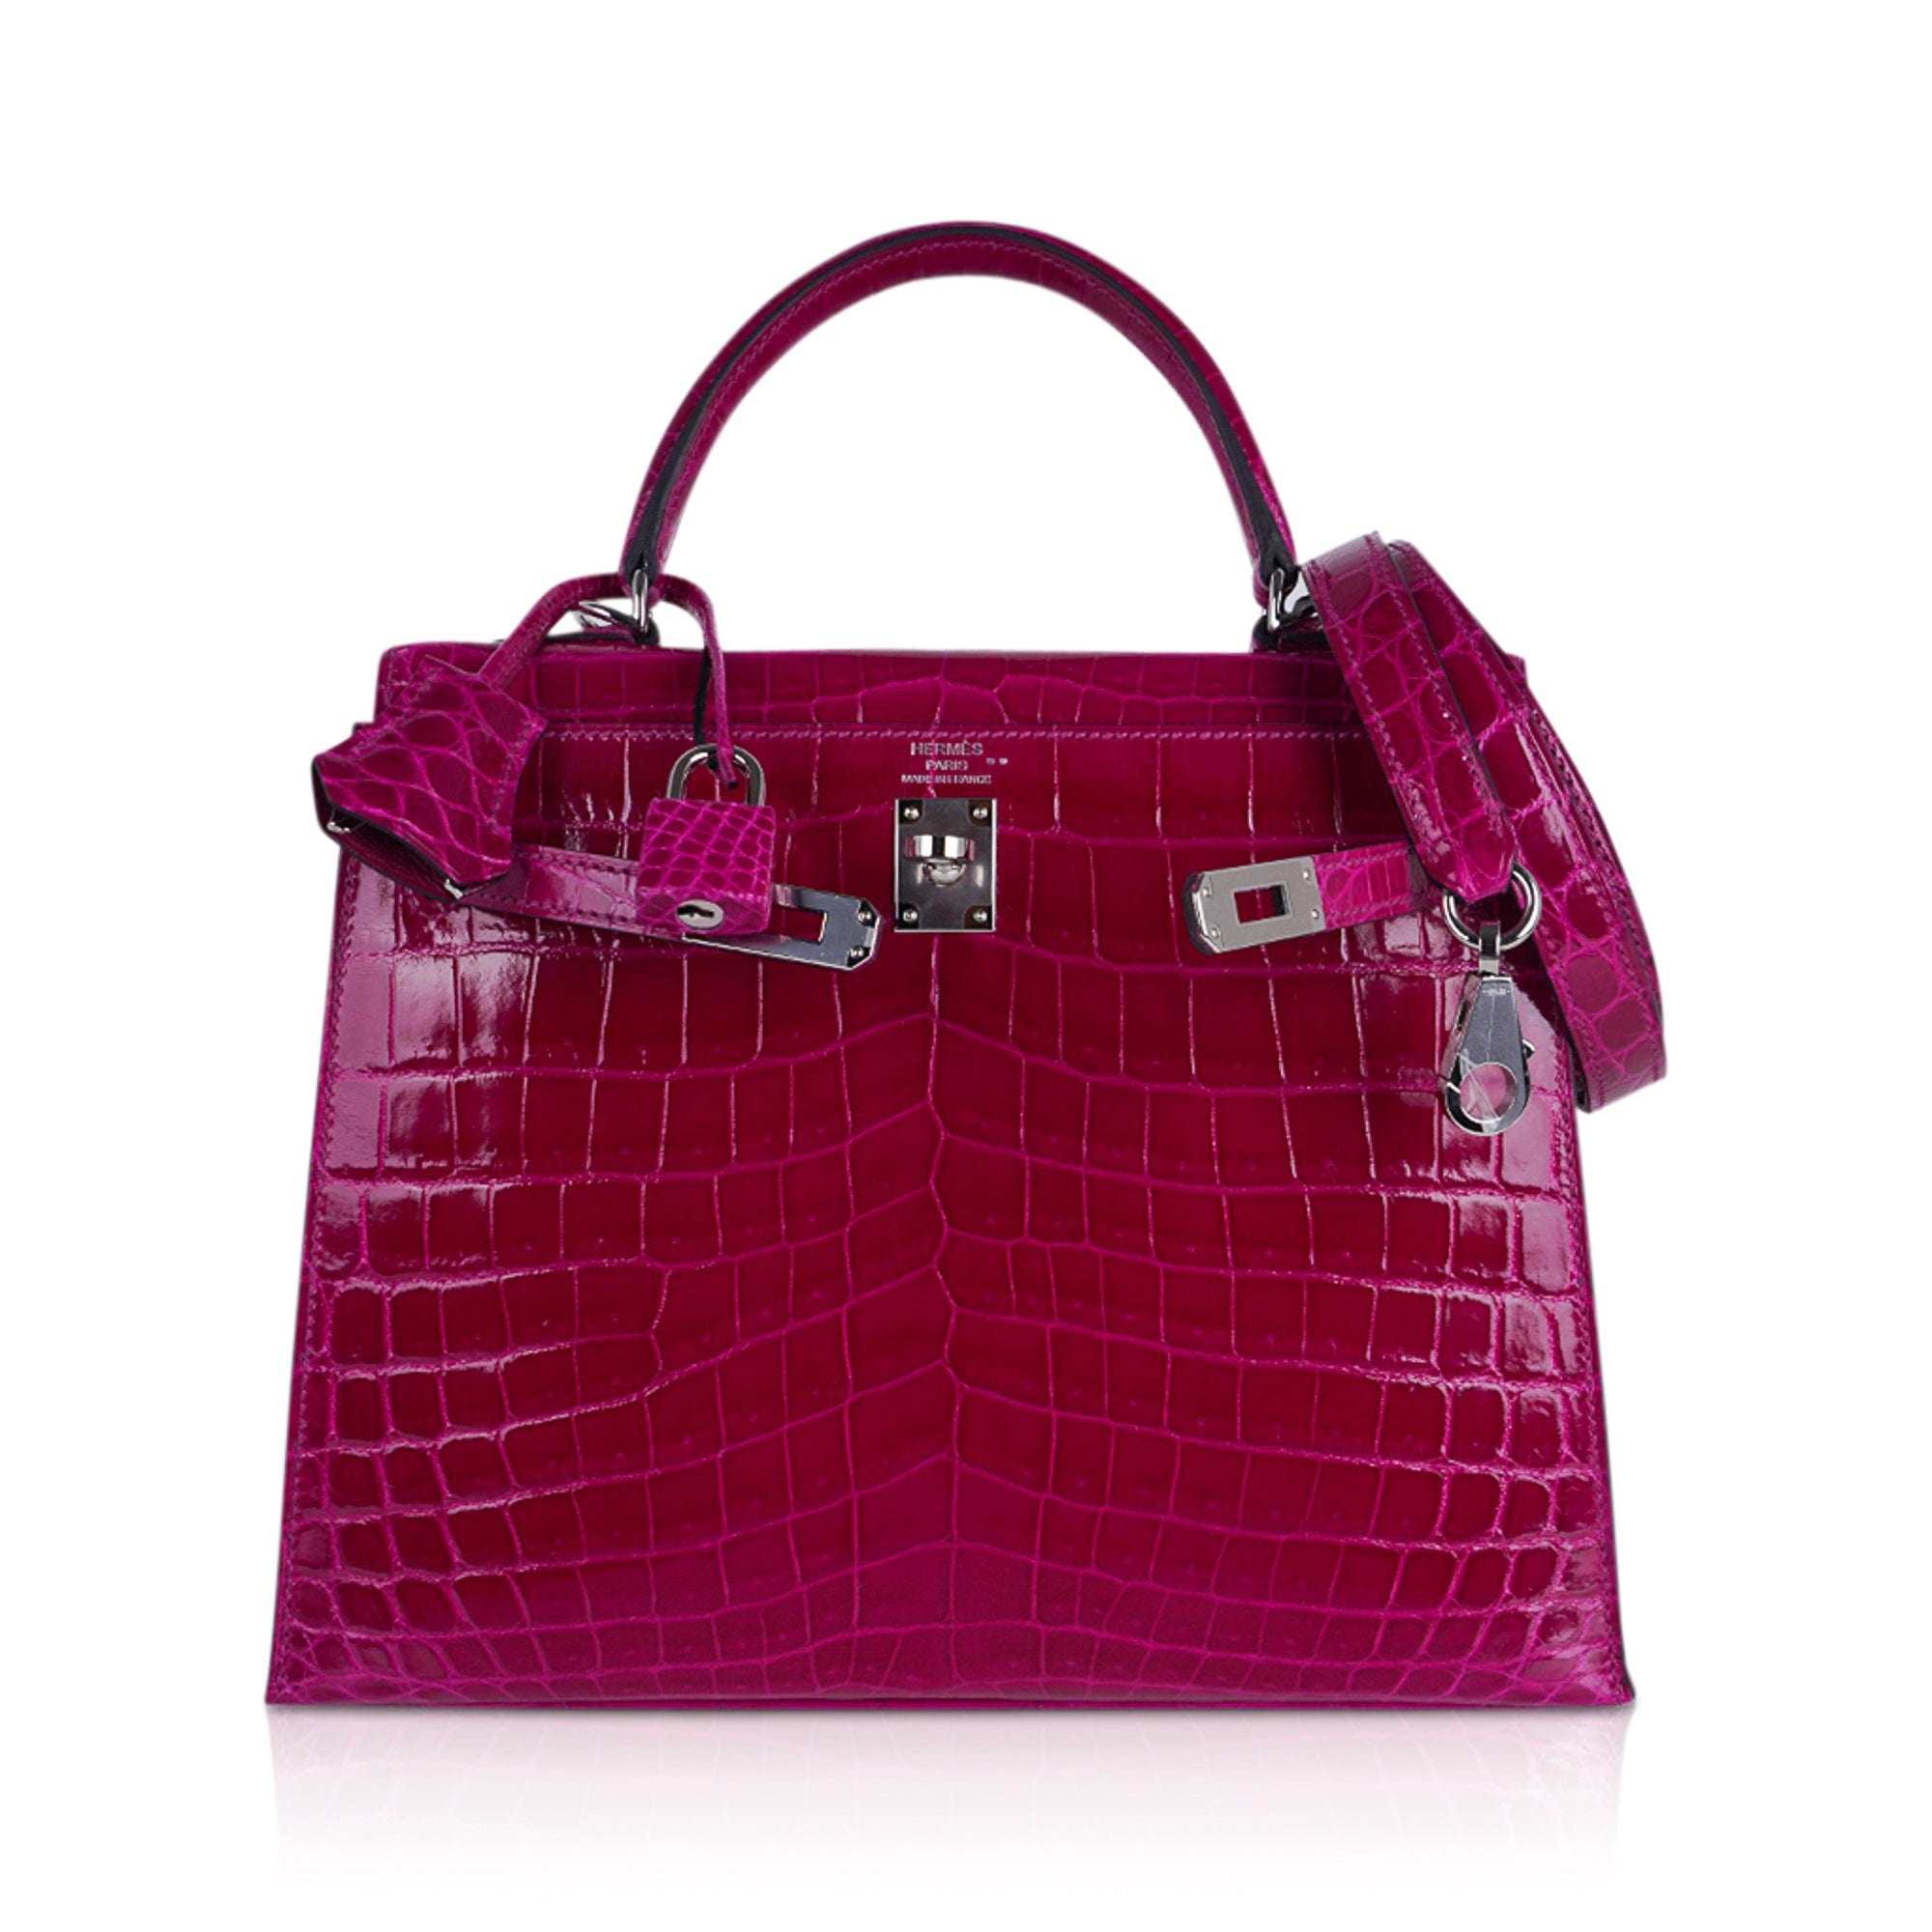 HERMES KELLY PURPLE - Luxury Bags